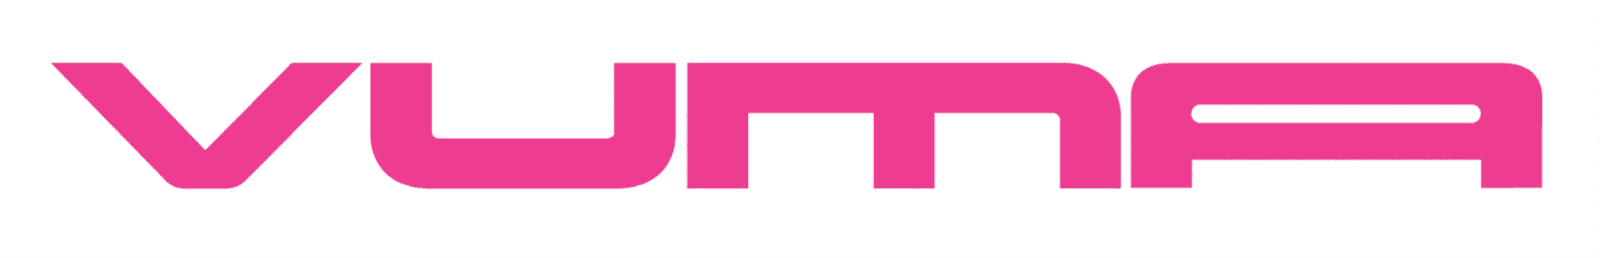 Logo of Vuma, one of Vox's fibre network providers